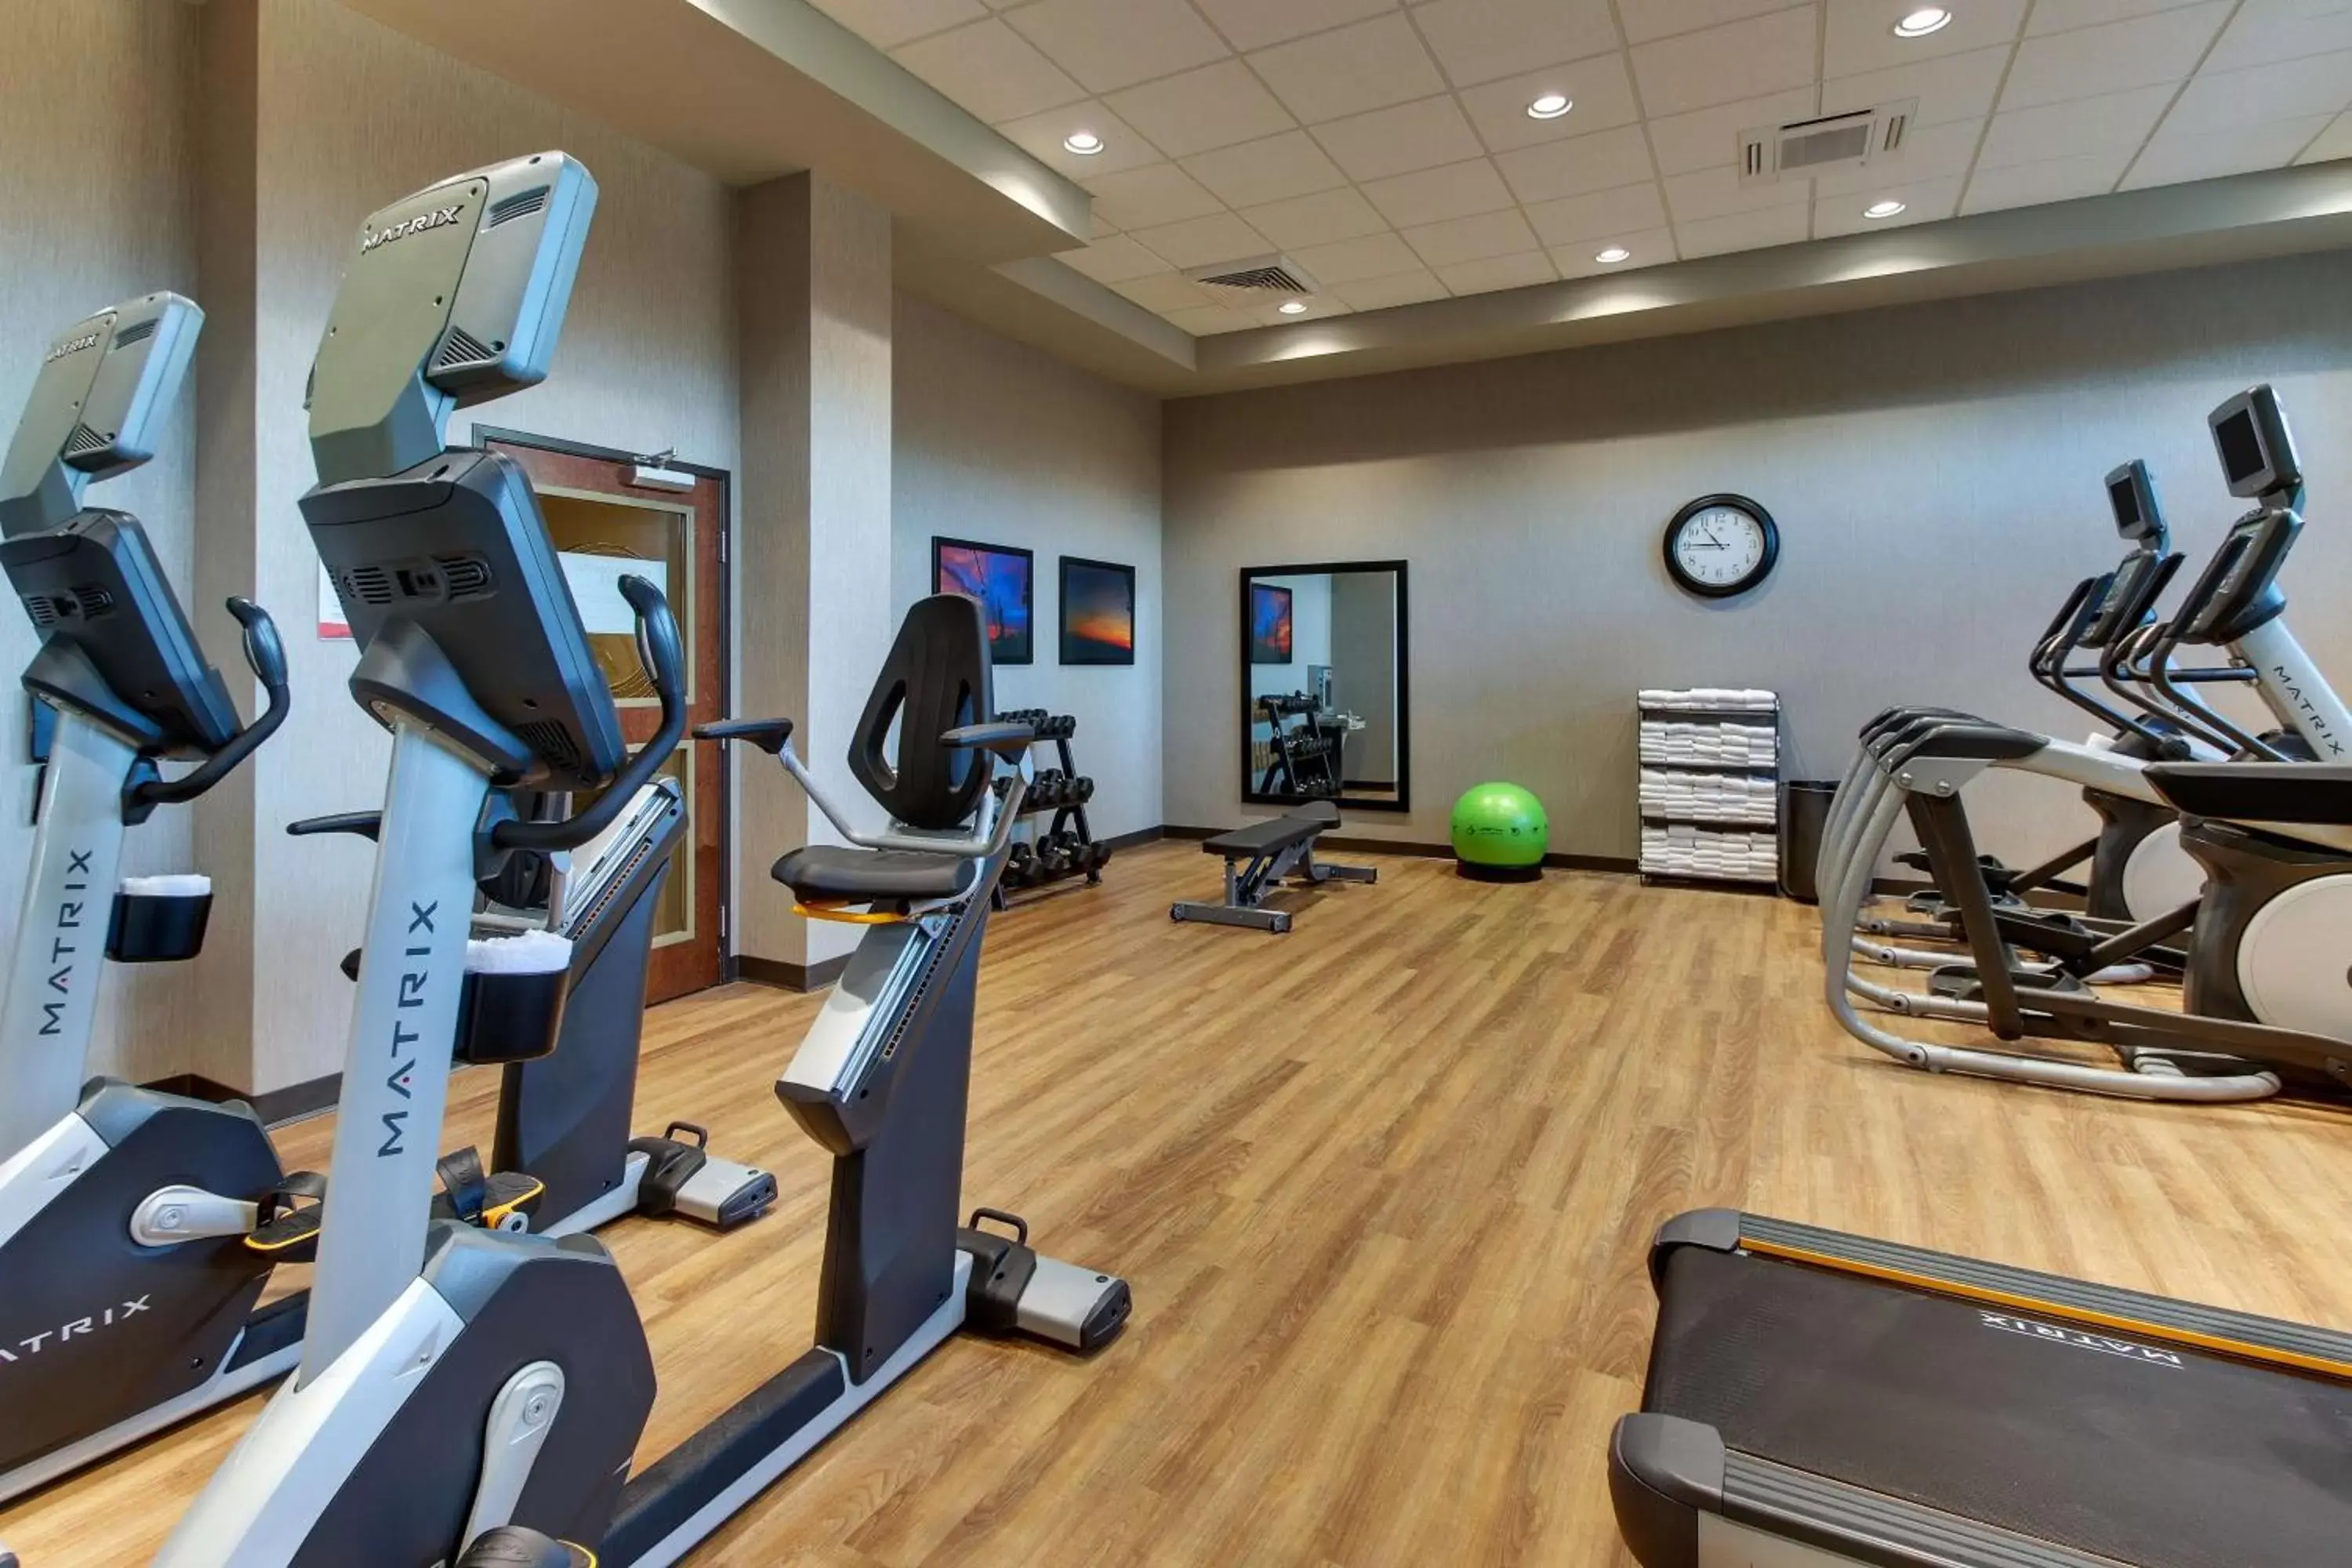 Activities, Fitness Center/Facilities in Drury Inn & Suites Columbus Polaris